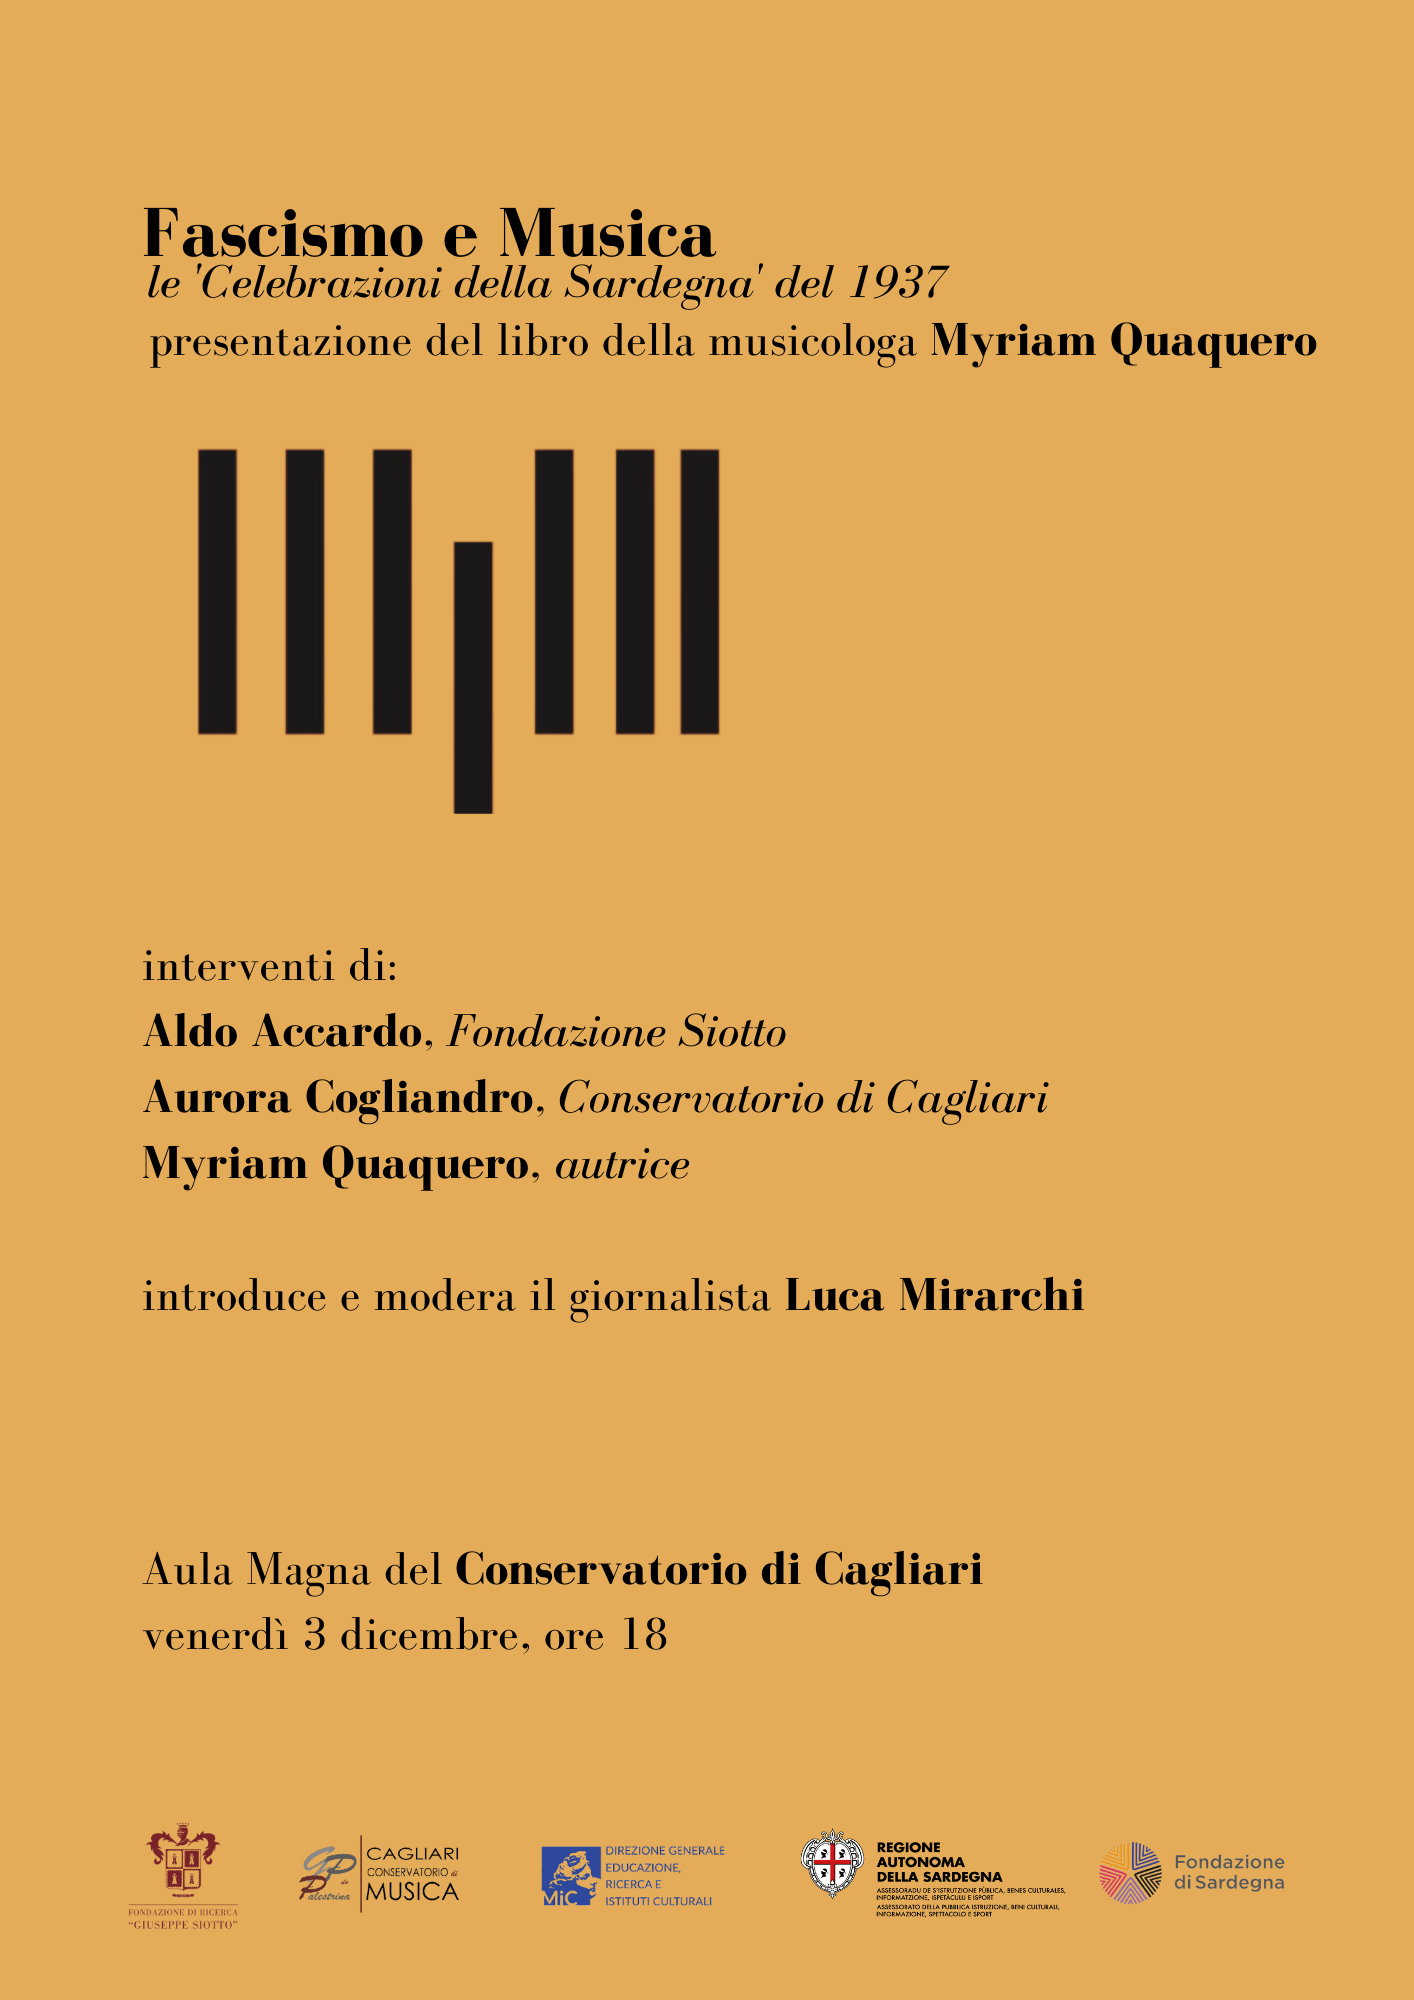 Al momento stai visualizzando Fascismo e Musica, presentazione del libro di Myriam Quaquero